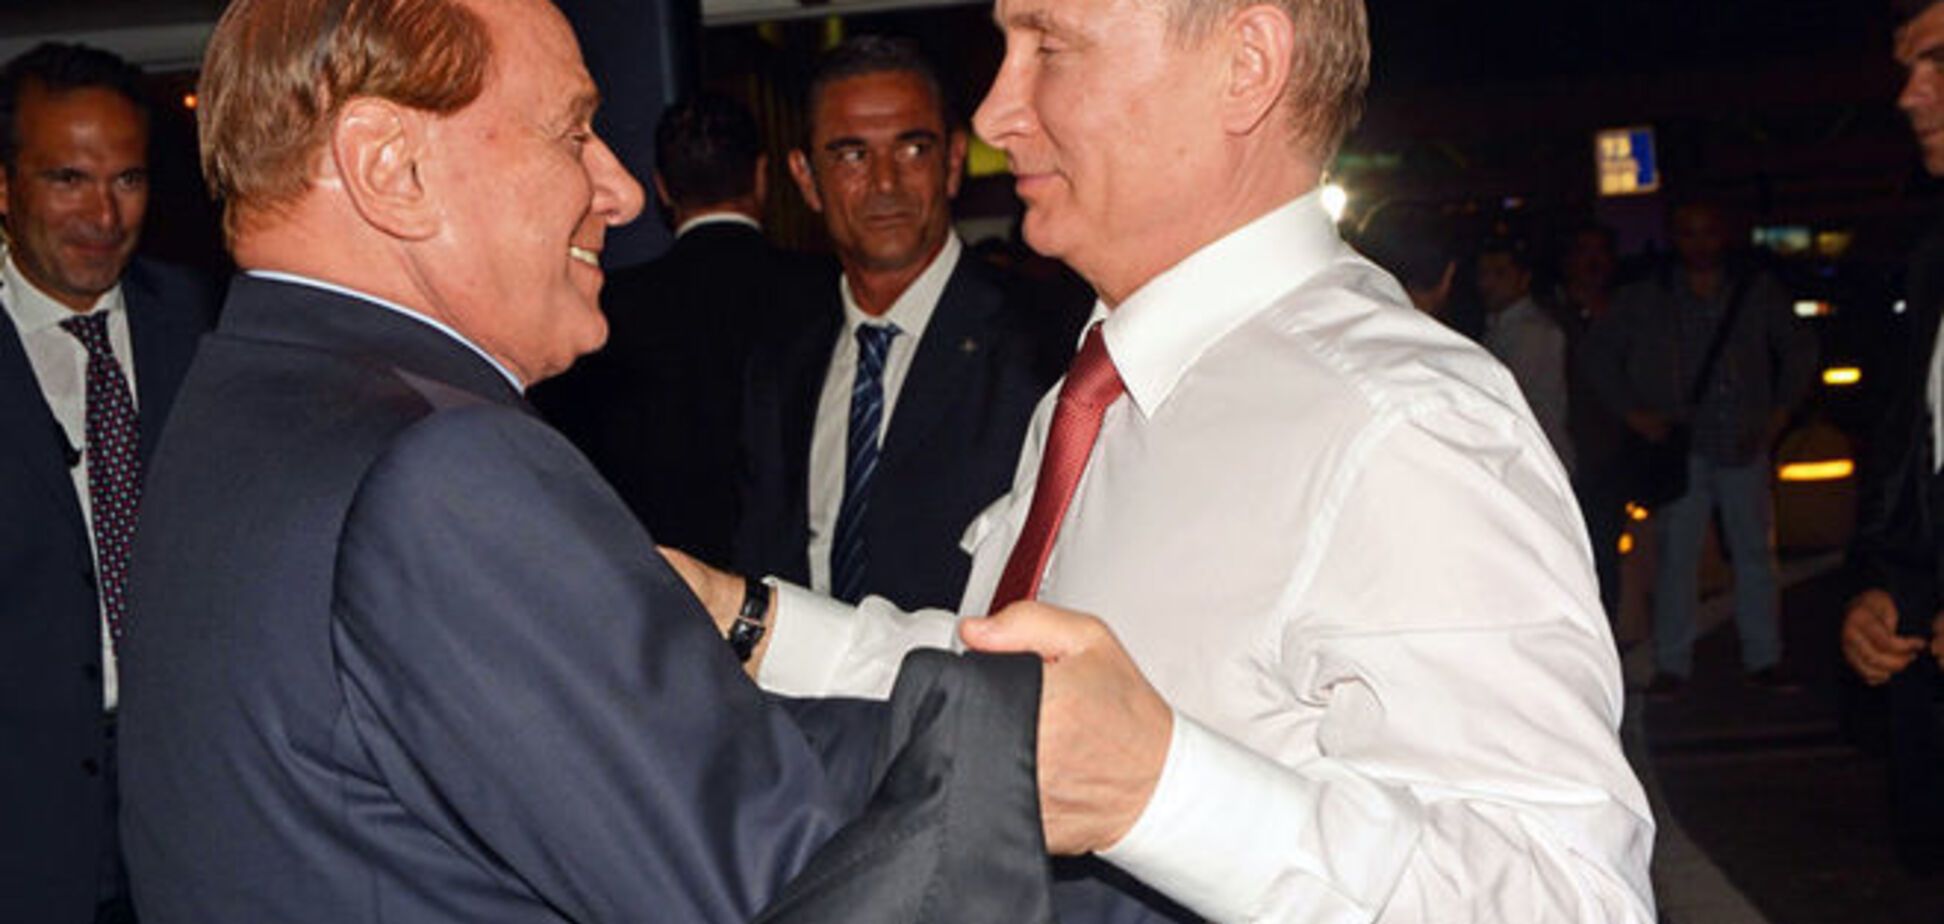 Стану міністром в Росії: Берлусконі проговорився про принадну пропозицію 'свого друга Путіна' - ЗМІ